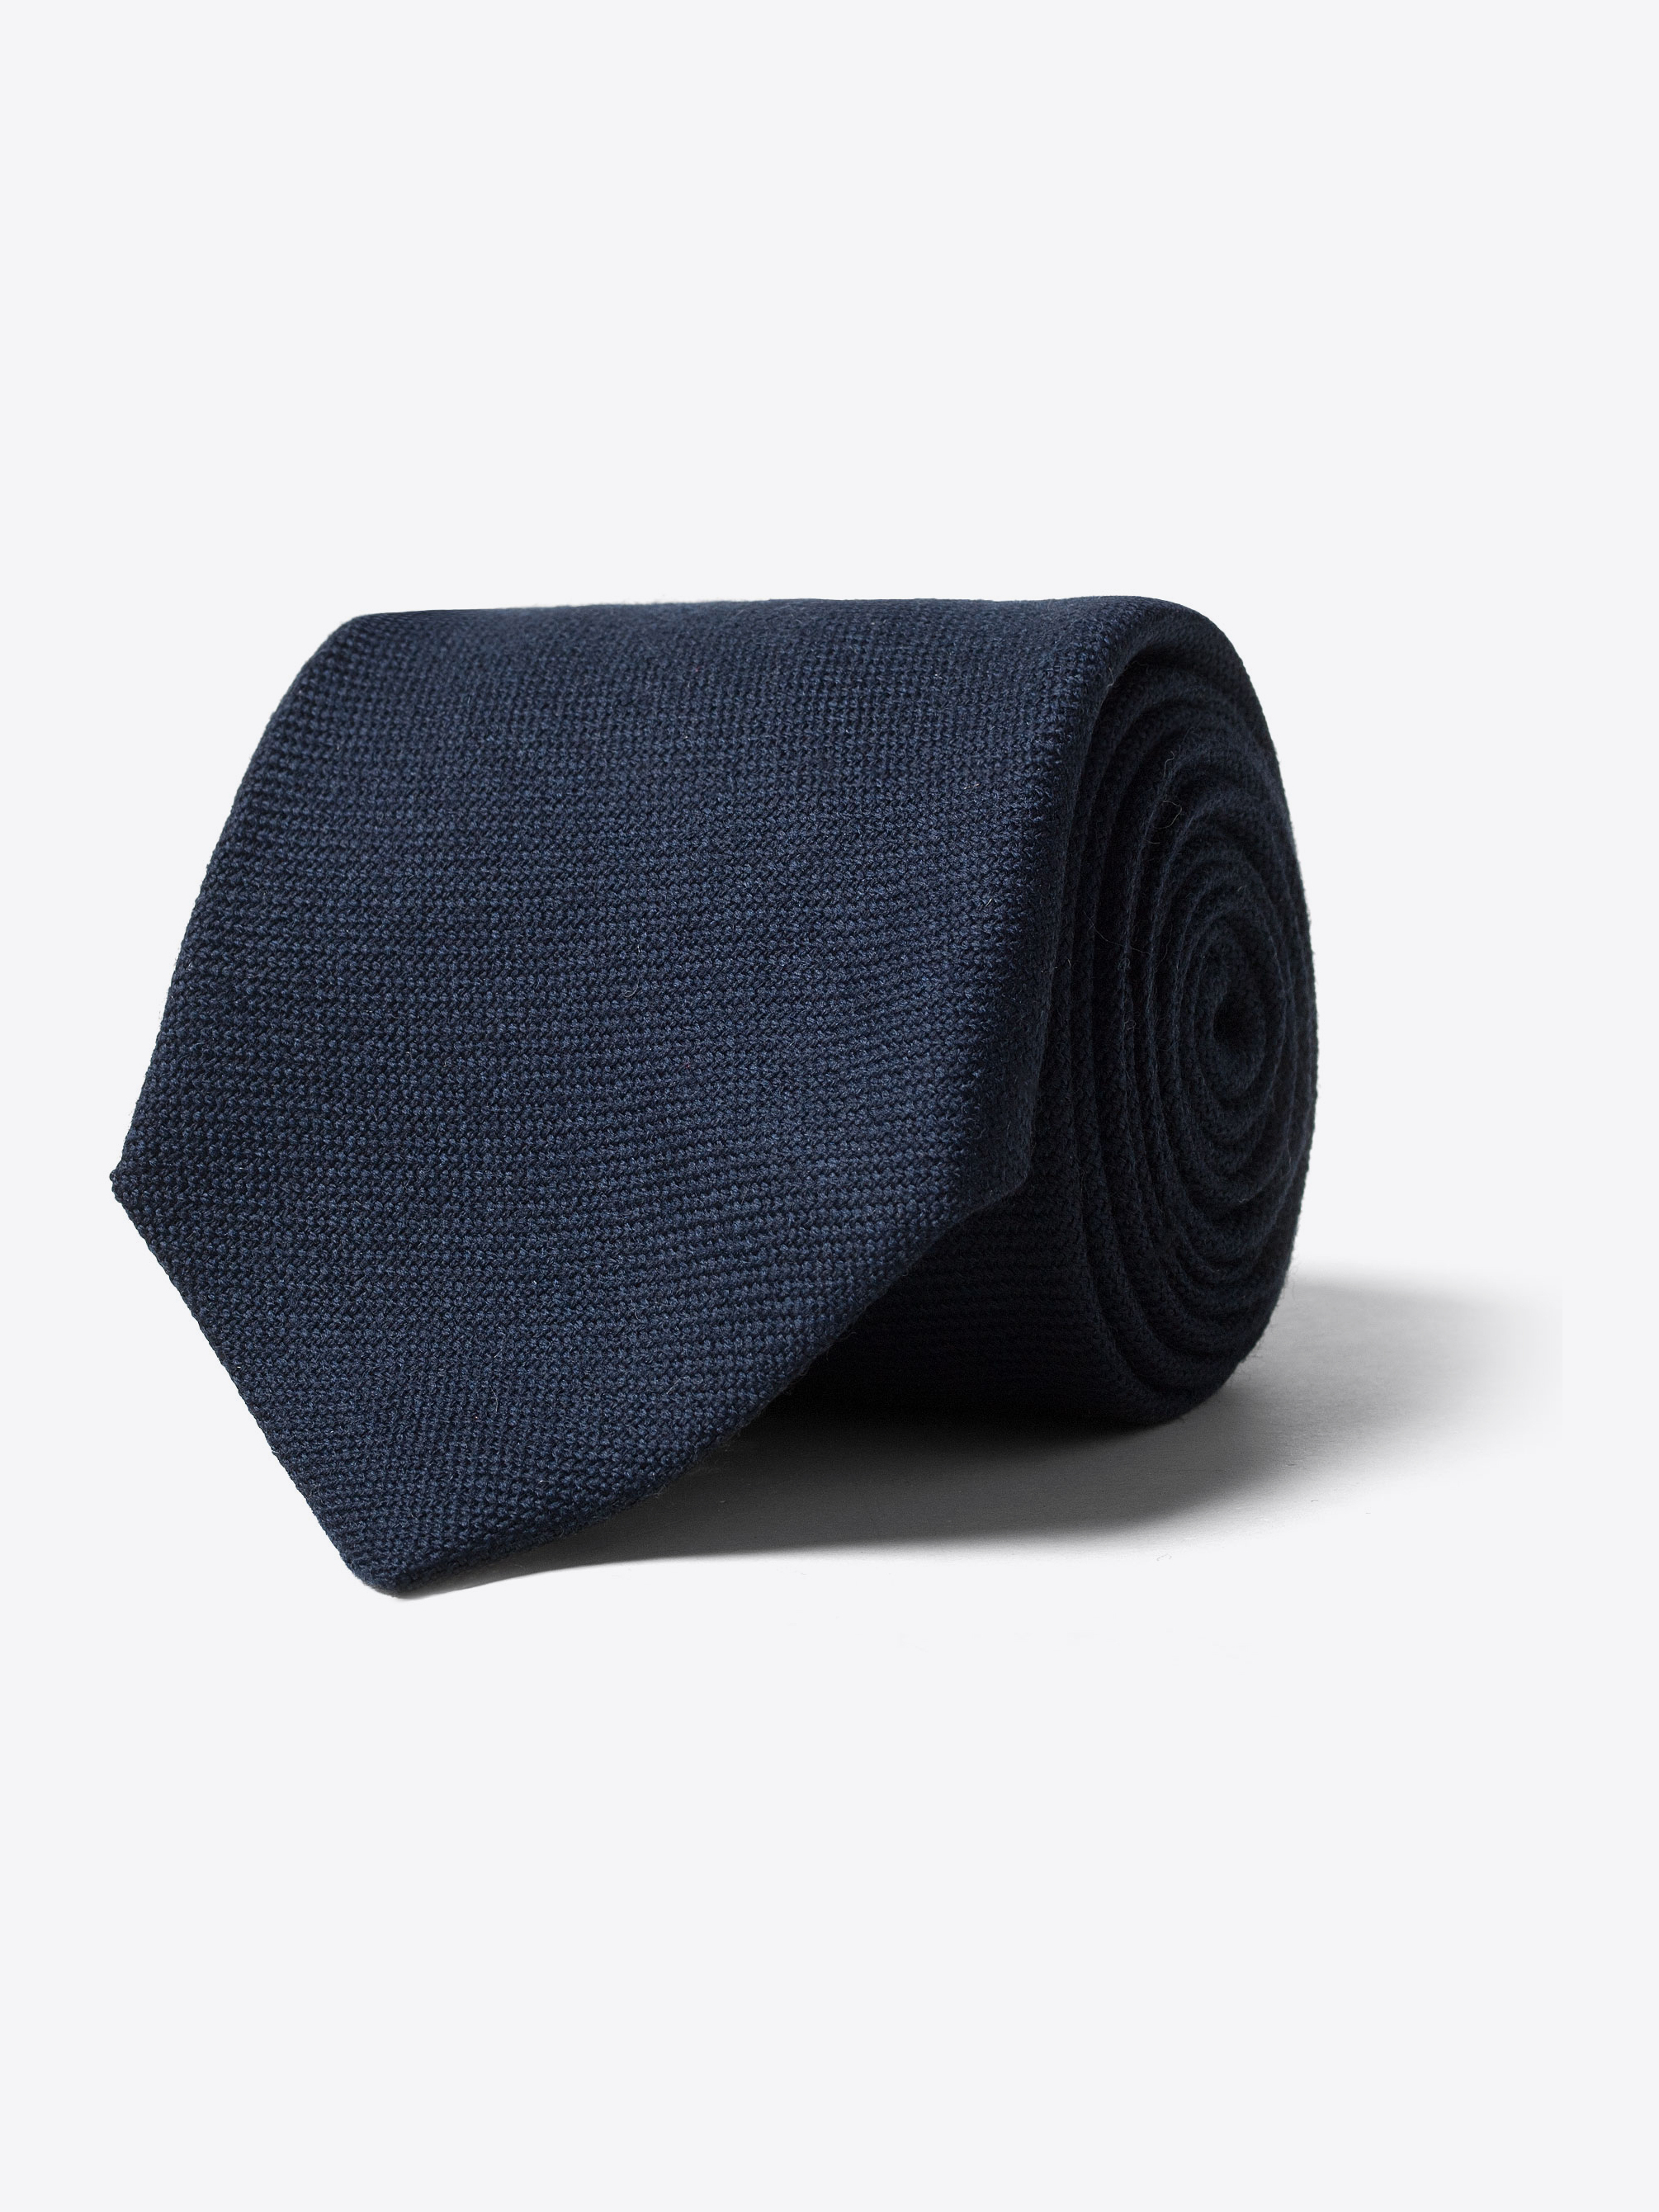 Zoom Image of Navy Blue Wool Flannel Tie